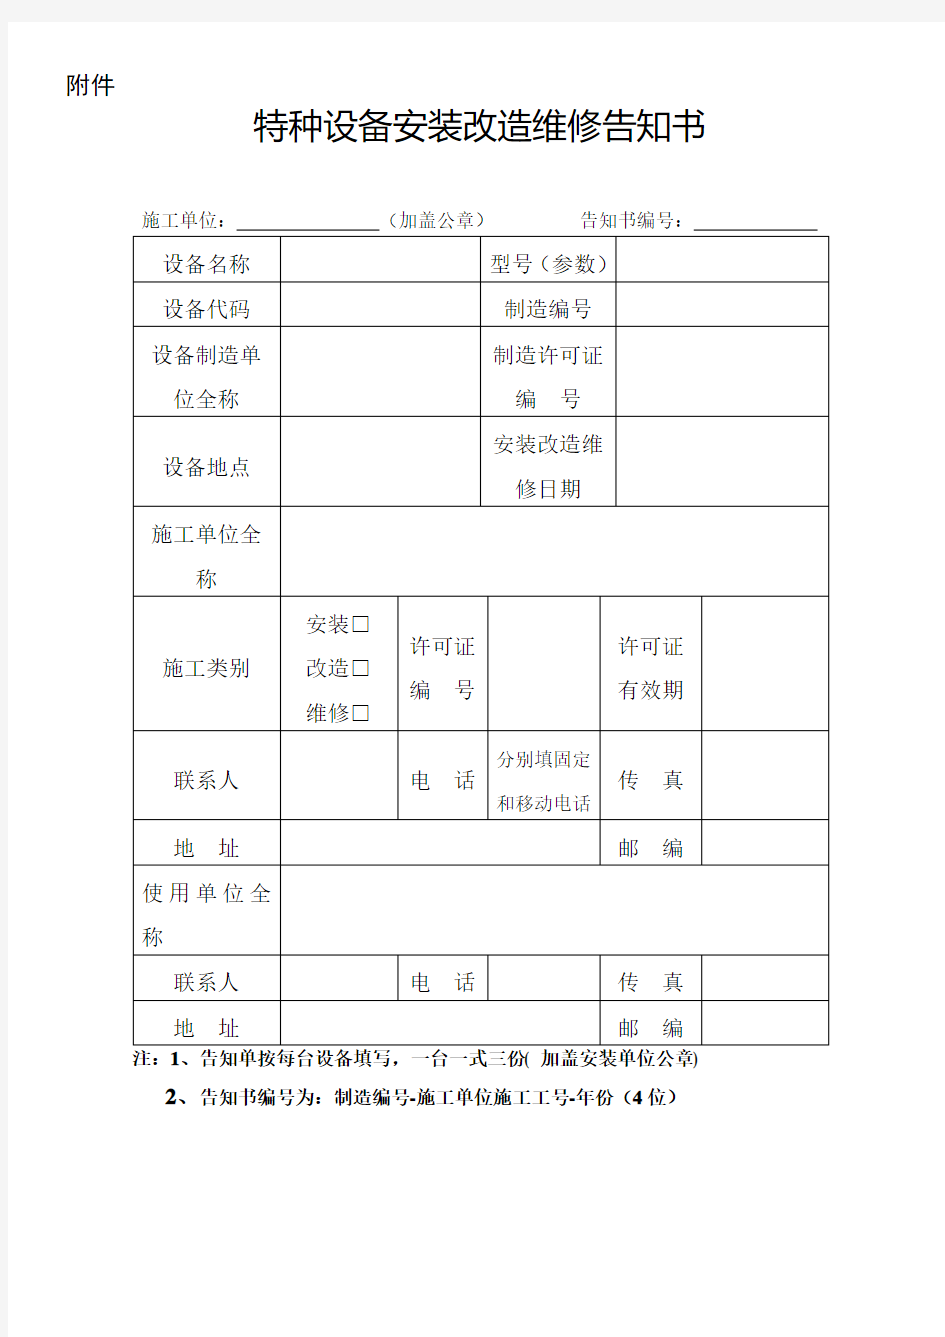 江苏省特种设备安装改造维修告知单 (新2014.9.9实行)